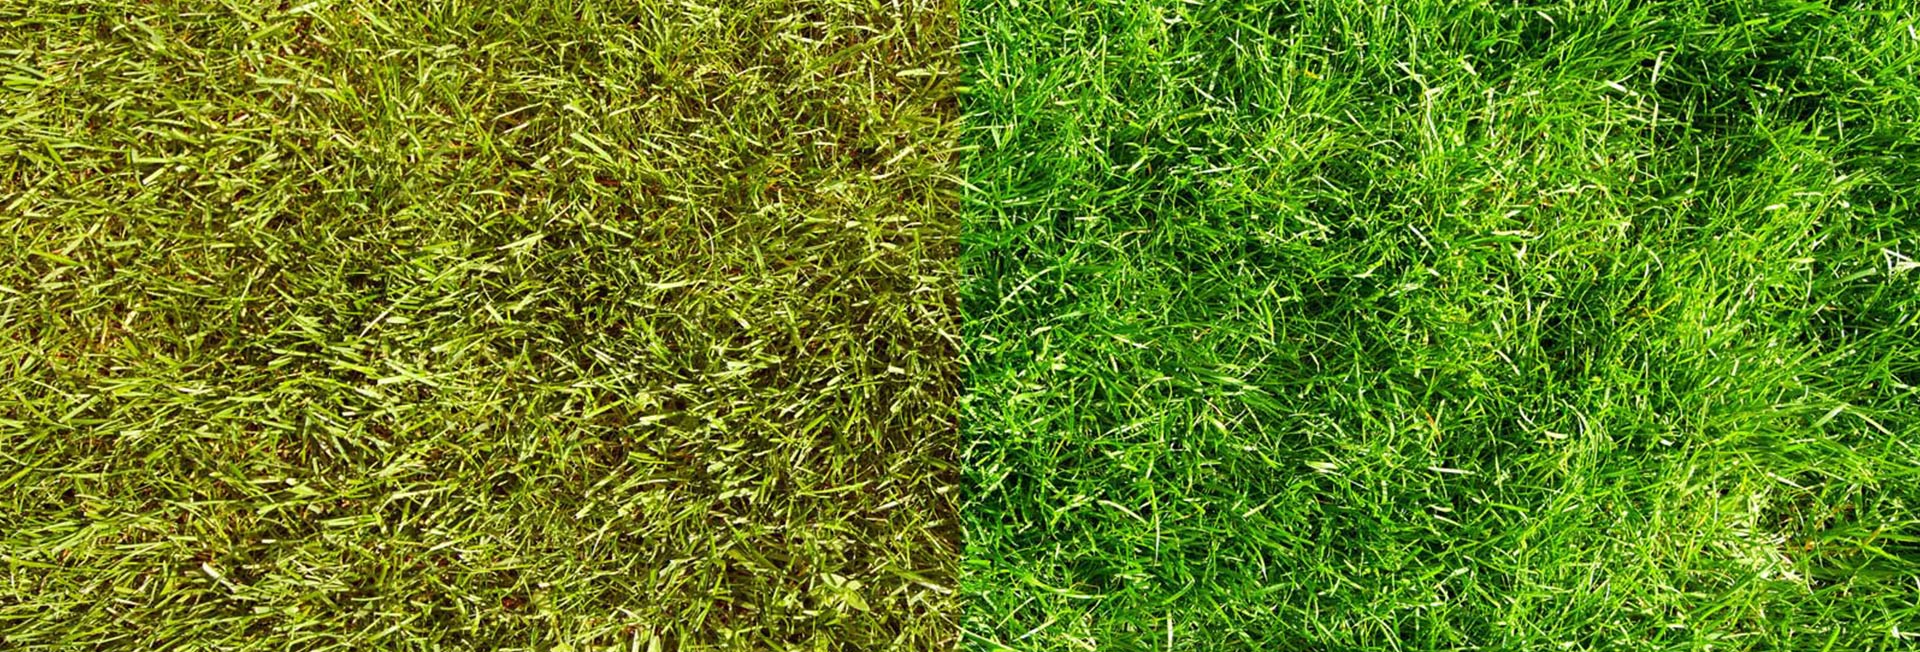 Hur får man grönt gräs: Tips för gräsmatteunderhåll